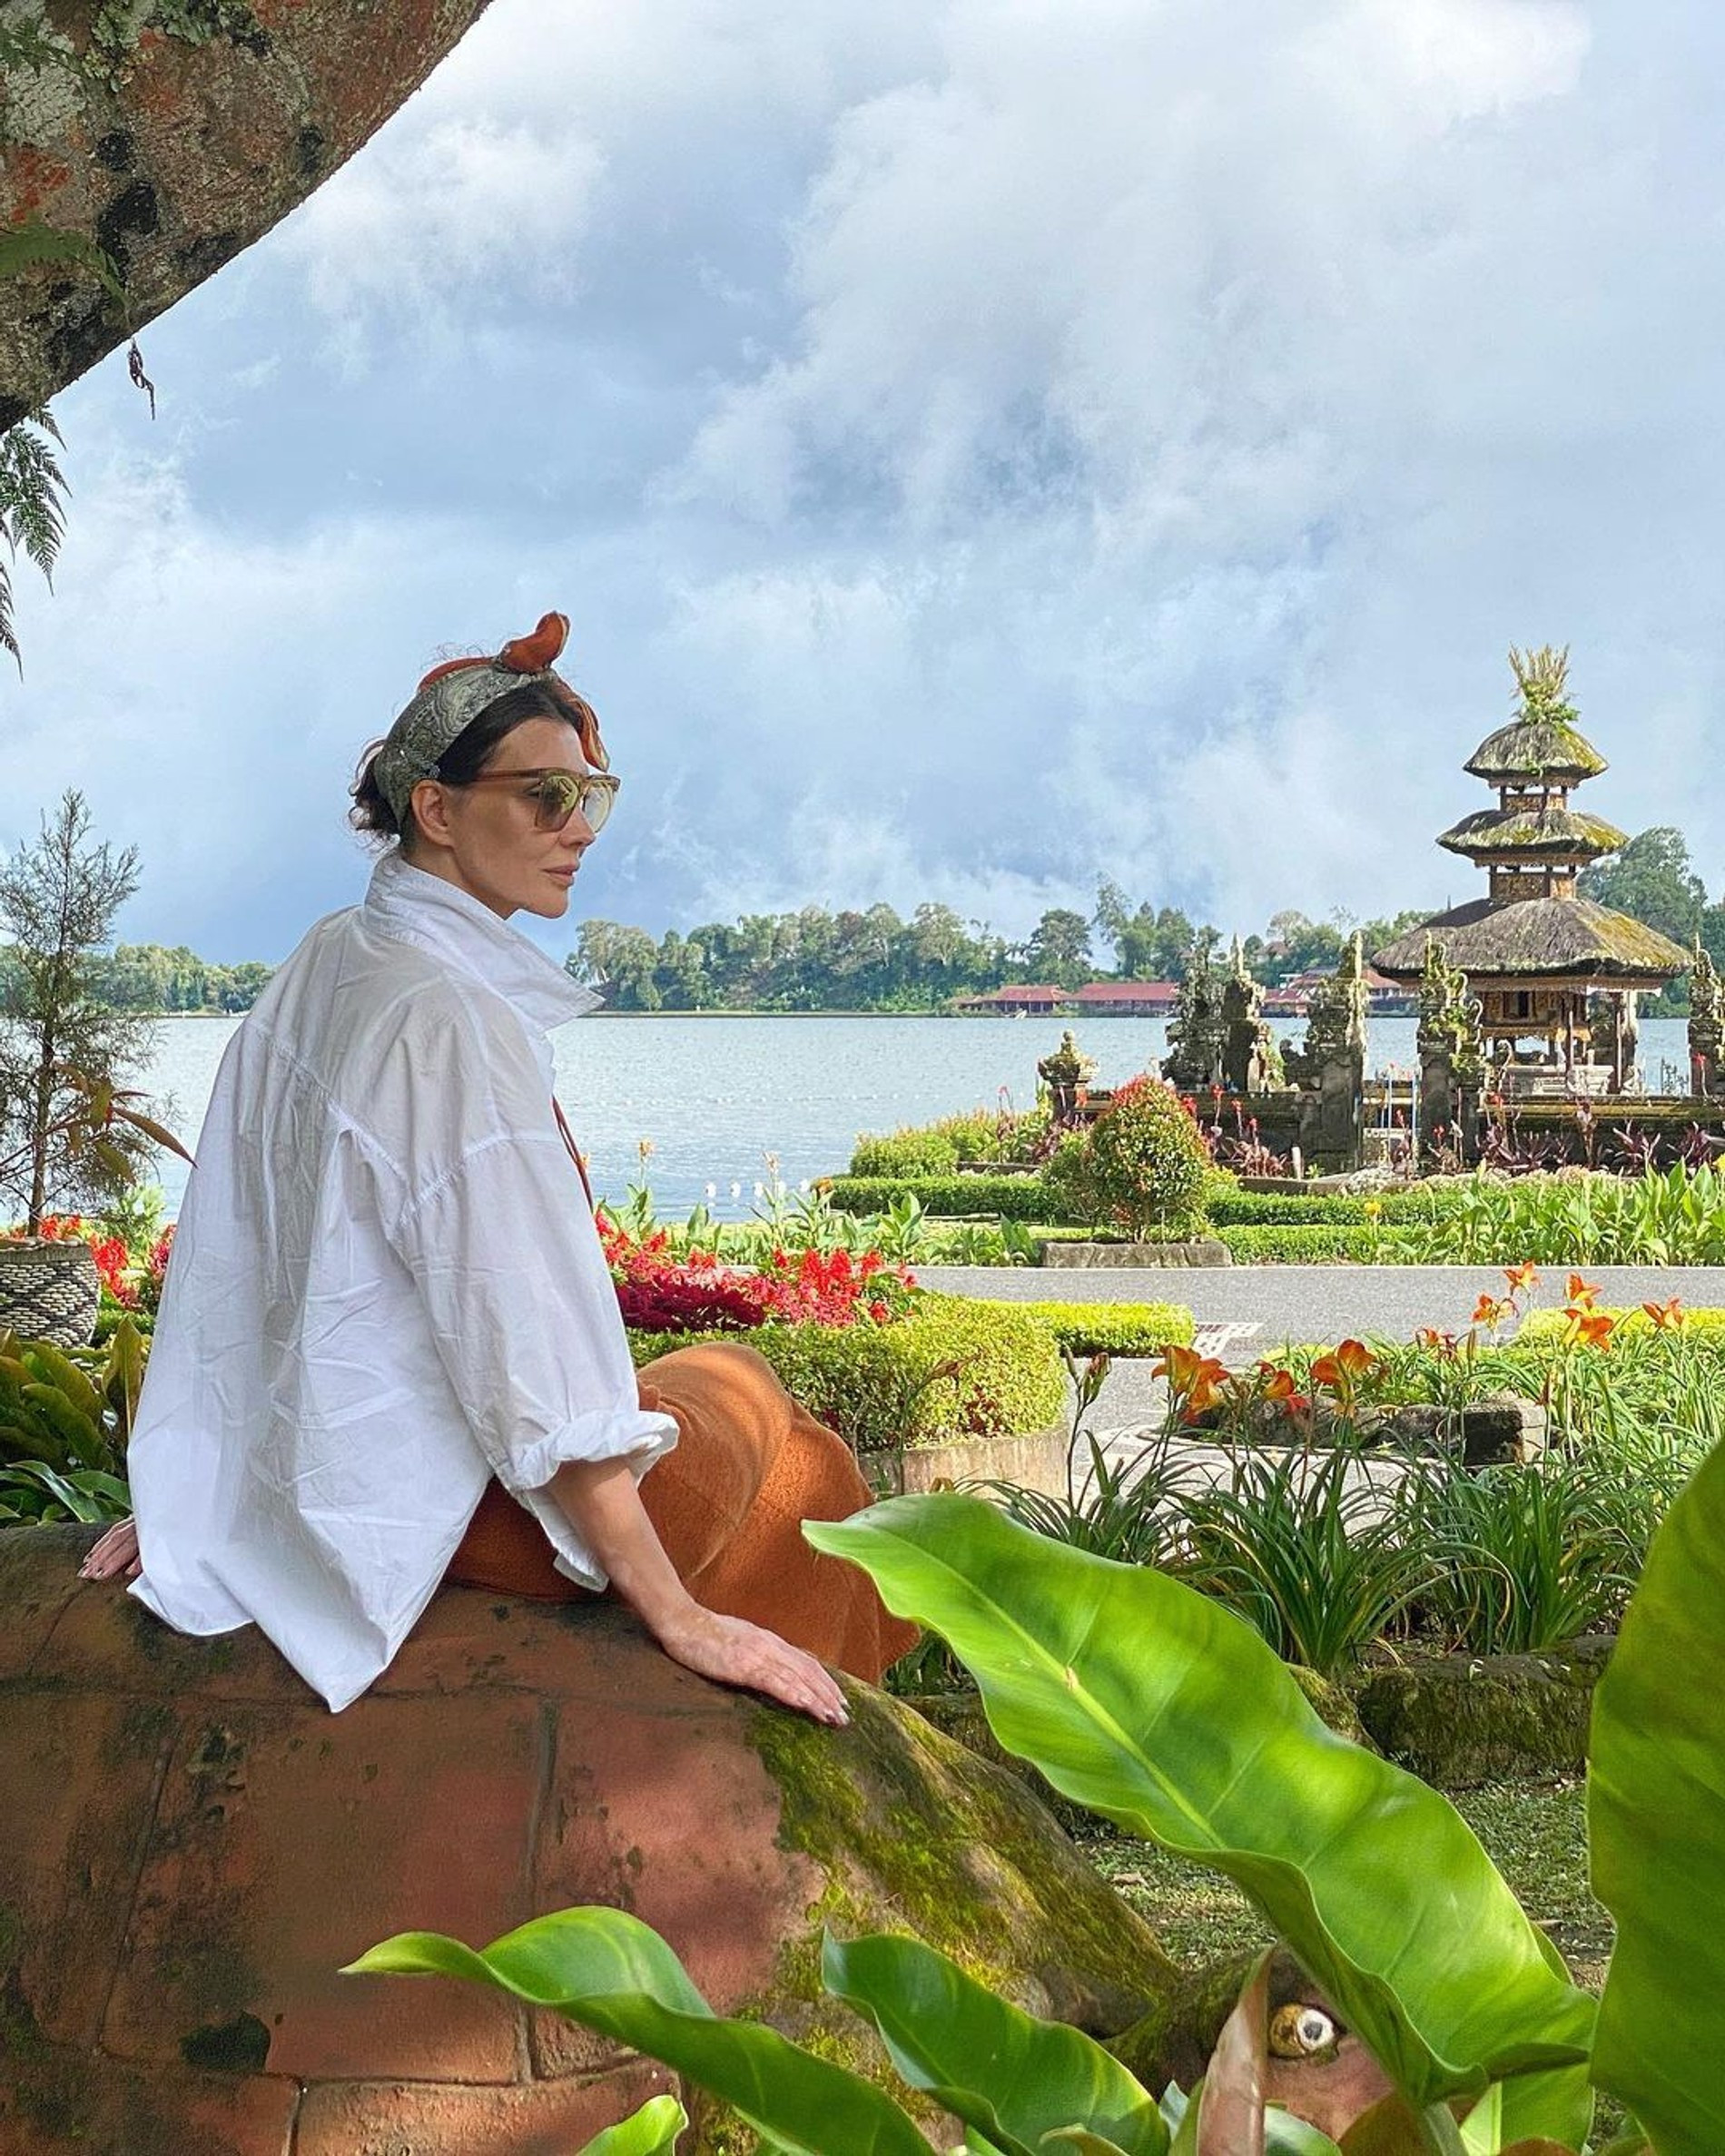 Мама Алеси Кафельниковой Мария на Бали
Фото: Инстаграм (запрещен в РФ)  @mariakaf_official